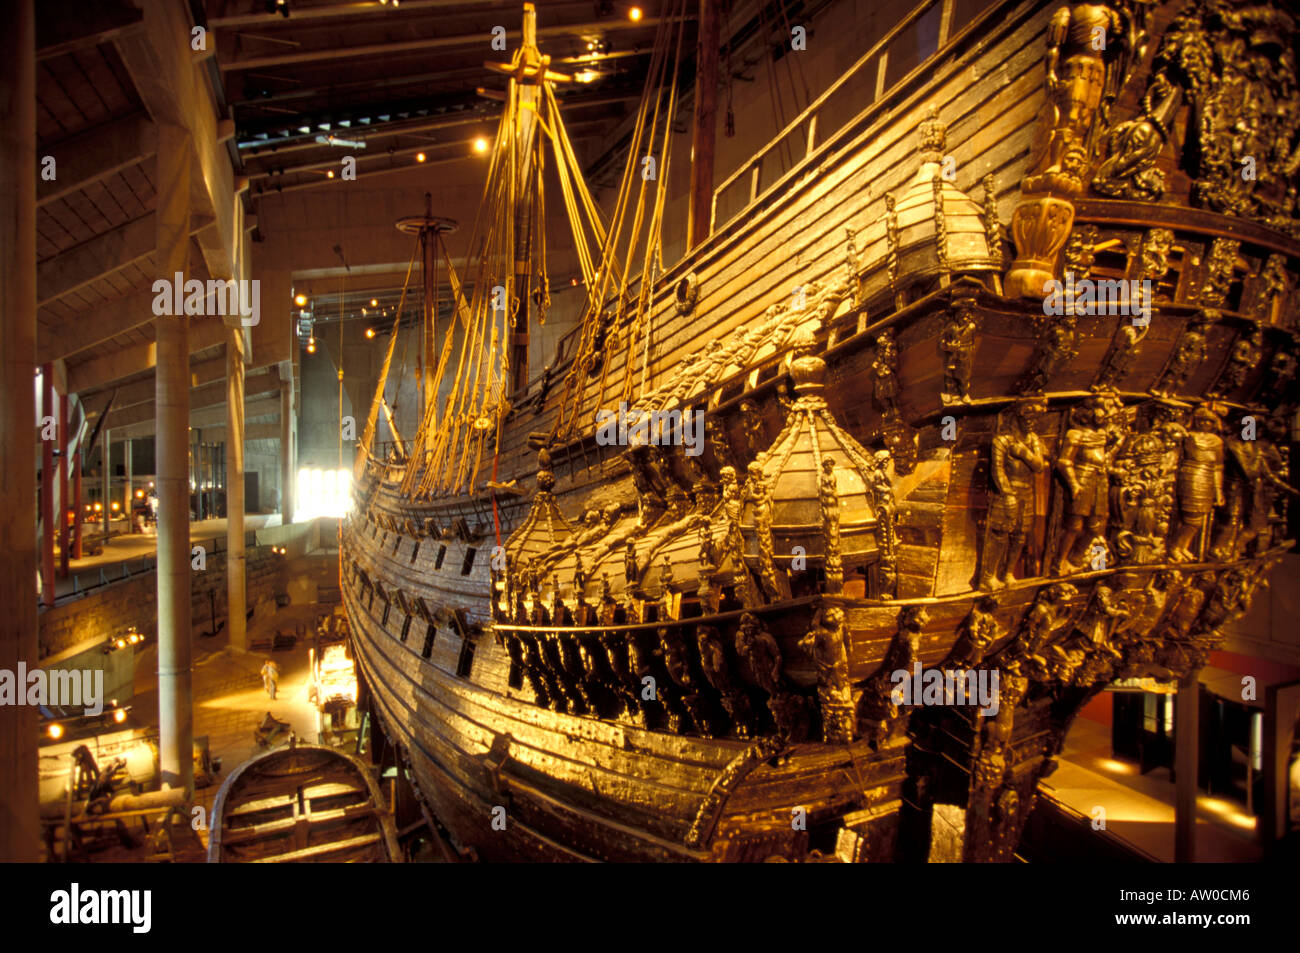 Regalskeppet Vasa Vasa Museum Stockholm Sweden Europe Stock Photo ...